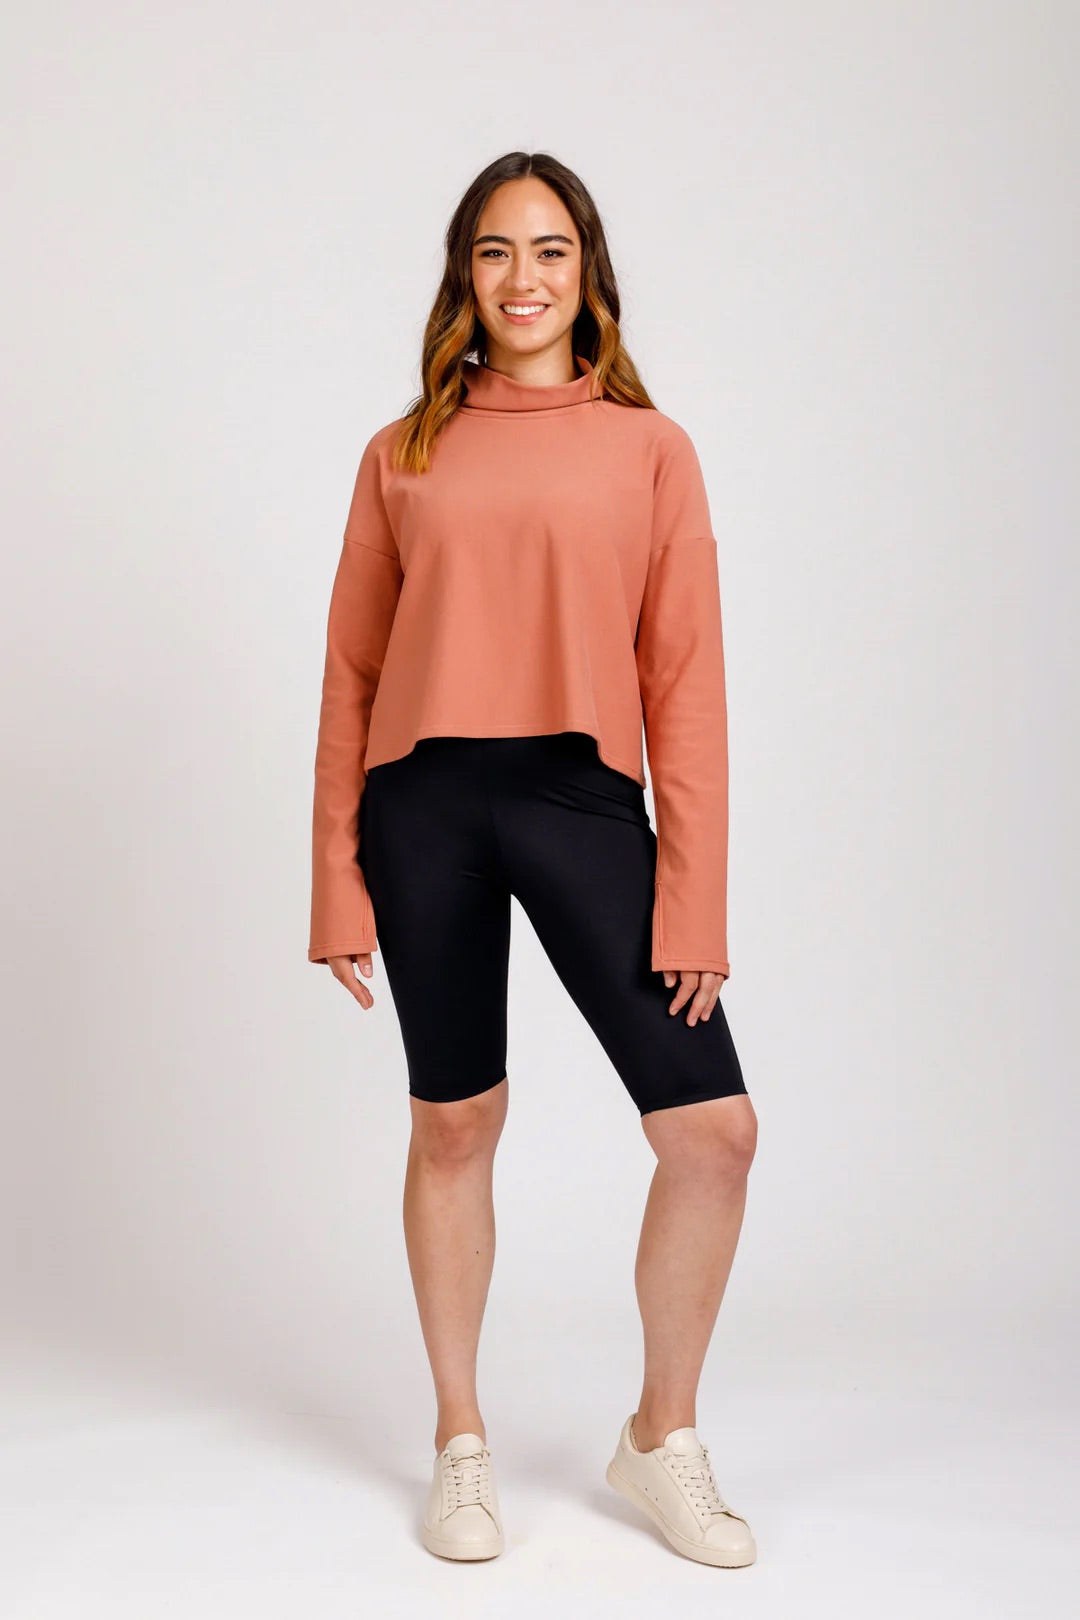 Megan Nielsen - Virginia Leggings Sewing Pattern – Lamazi Fabrics